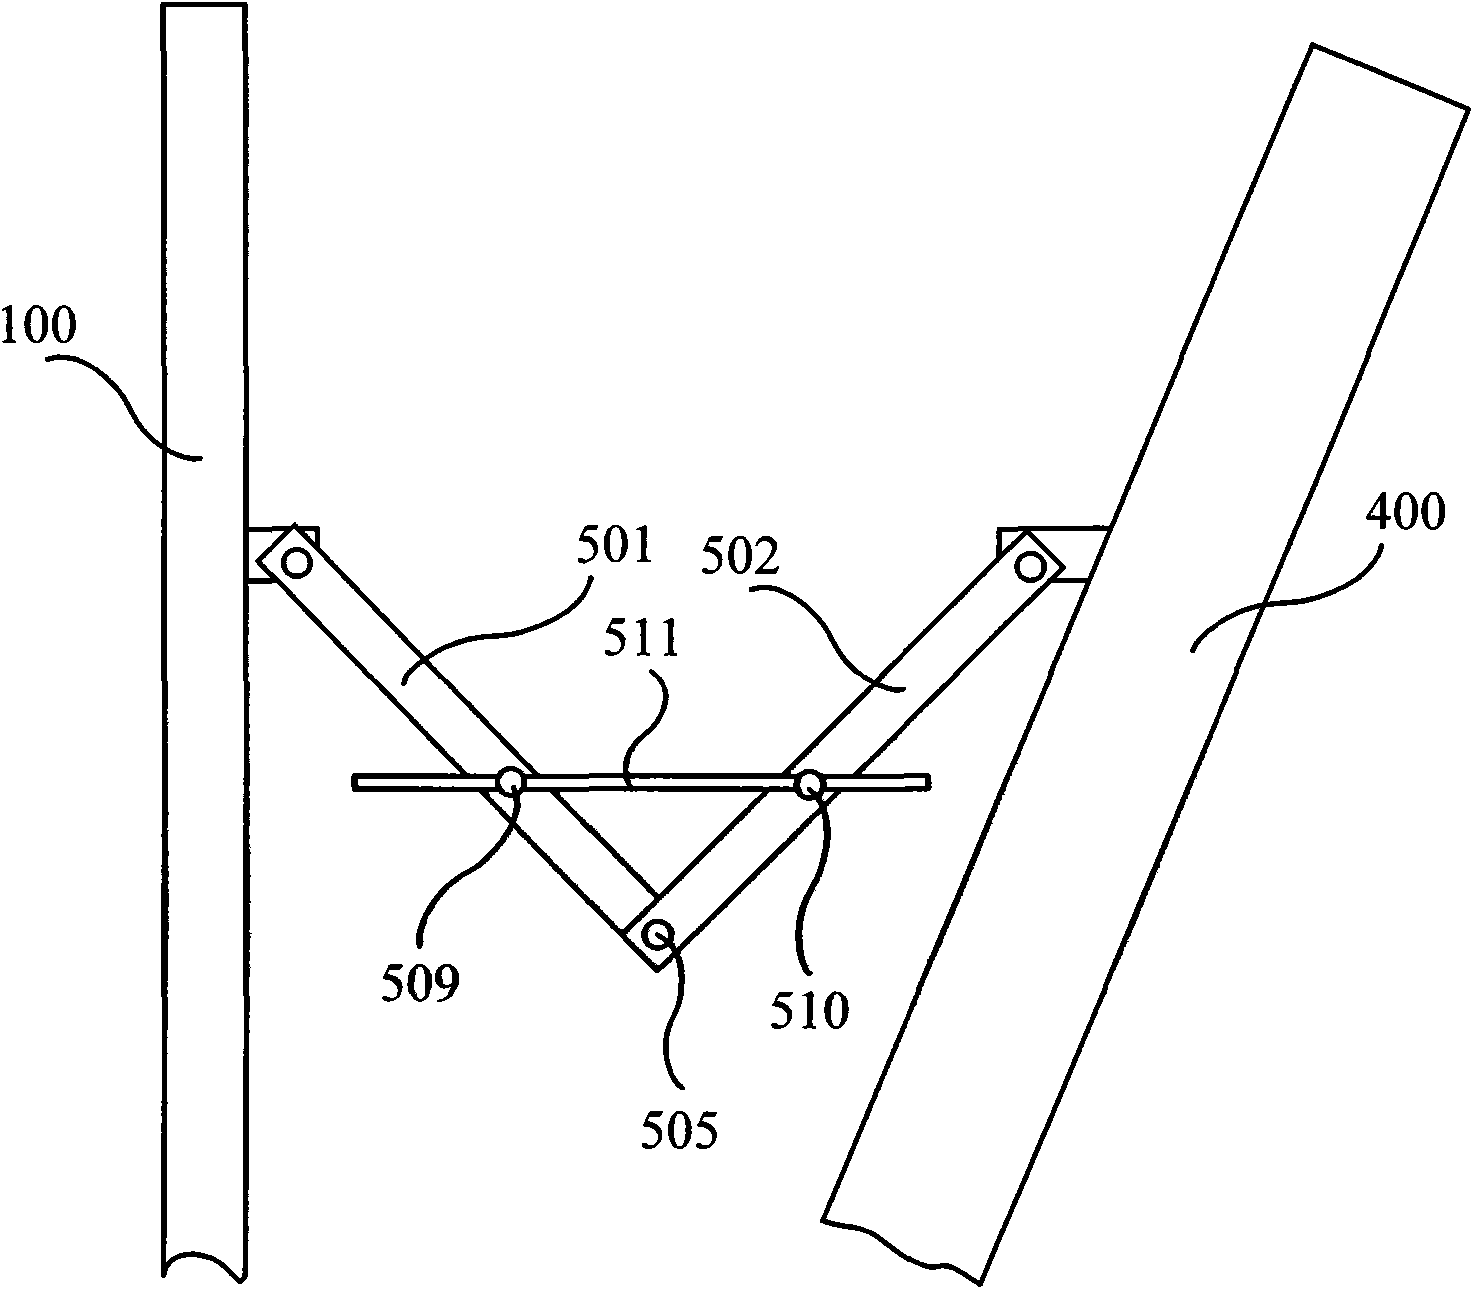 Antenna mounting frame